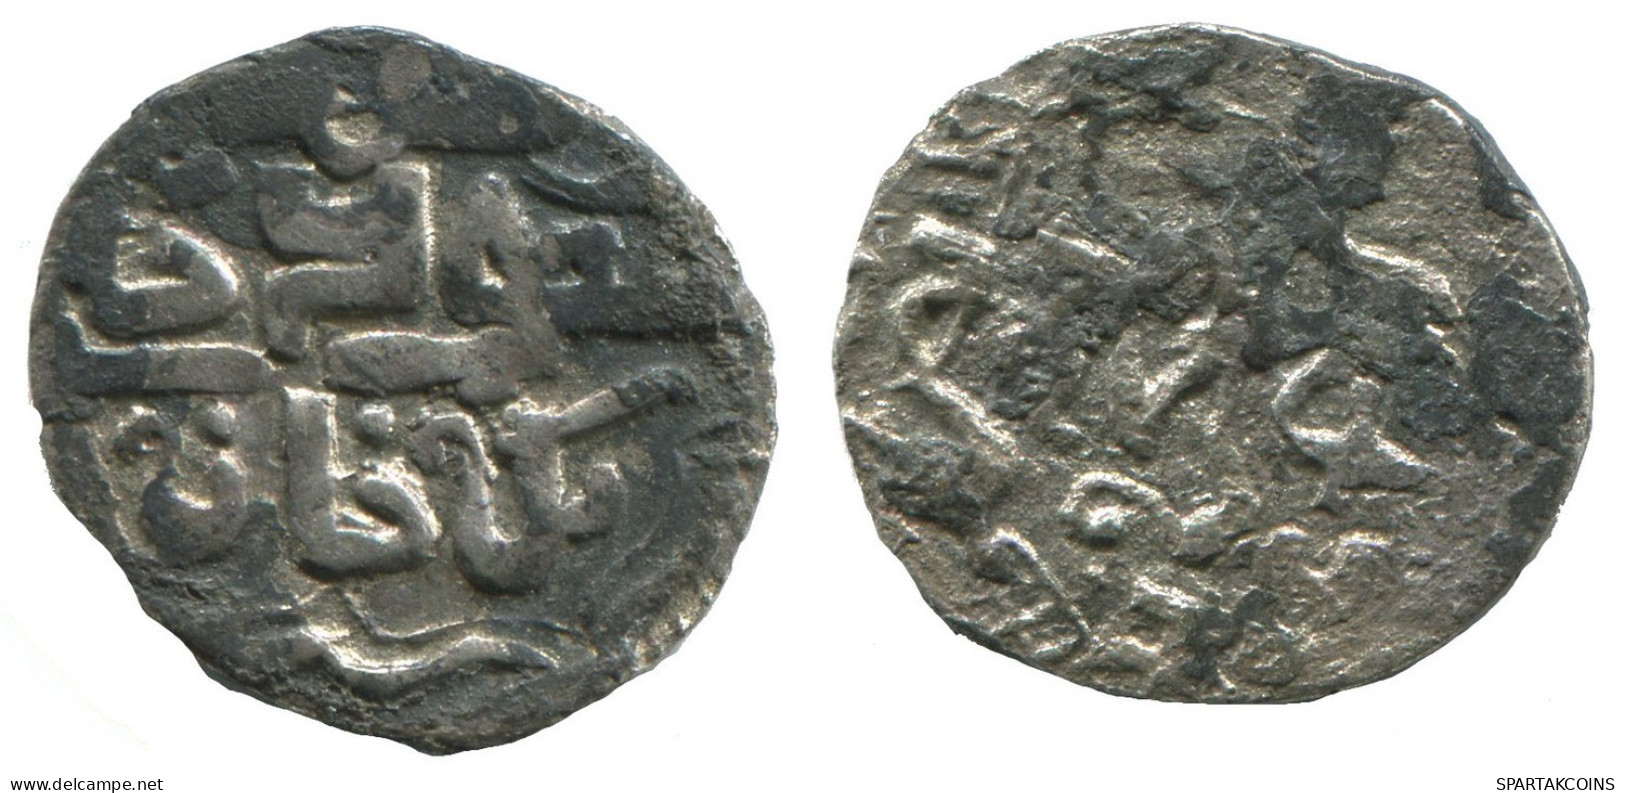 GOLDEN HORDE Silver Dirham Medieval Islamic Coin 1.3g/17mm #NNN2009.8.U.A - Islamiques